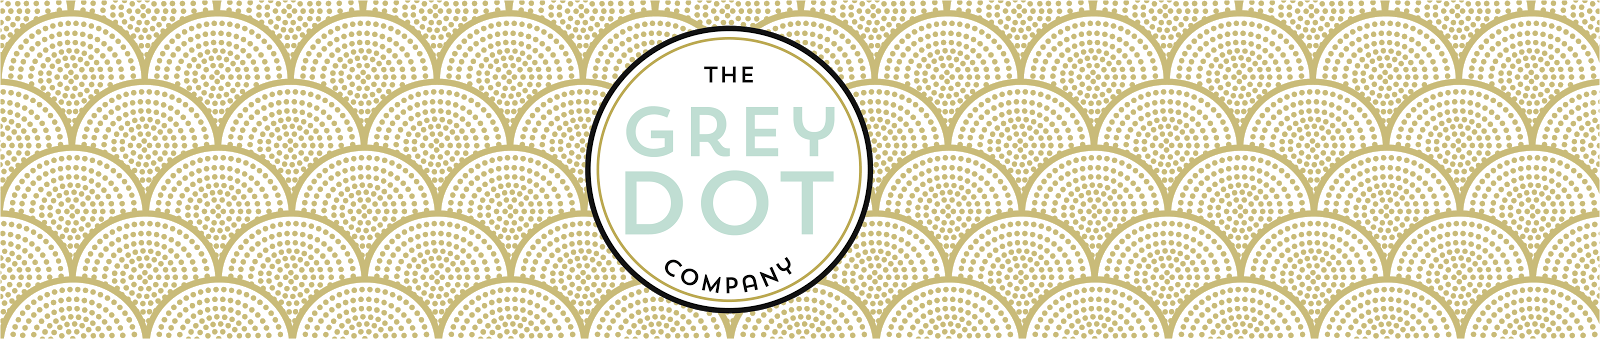 The Grey Dot Company